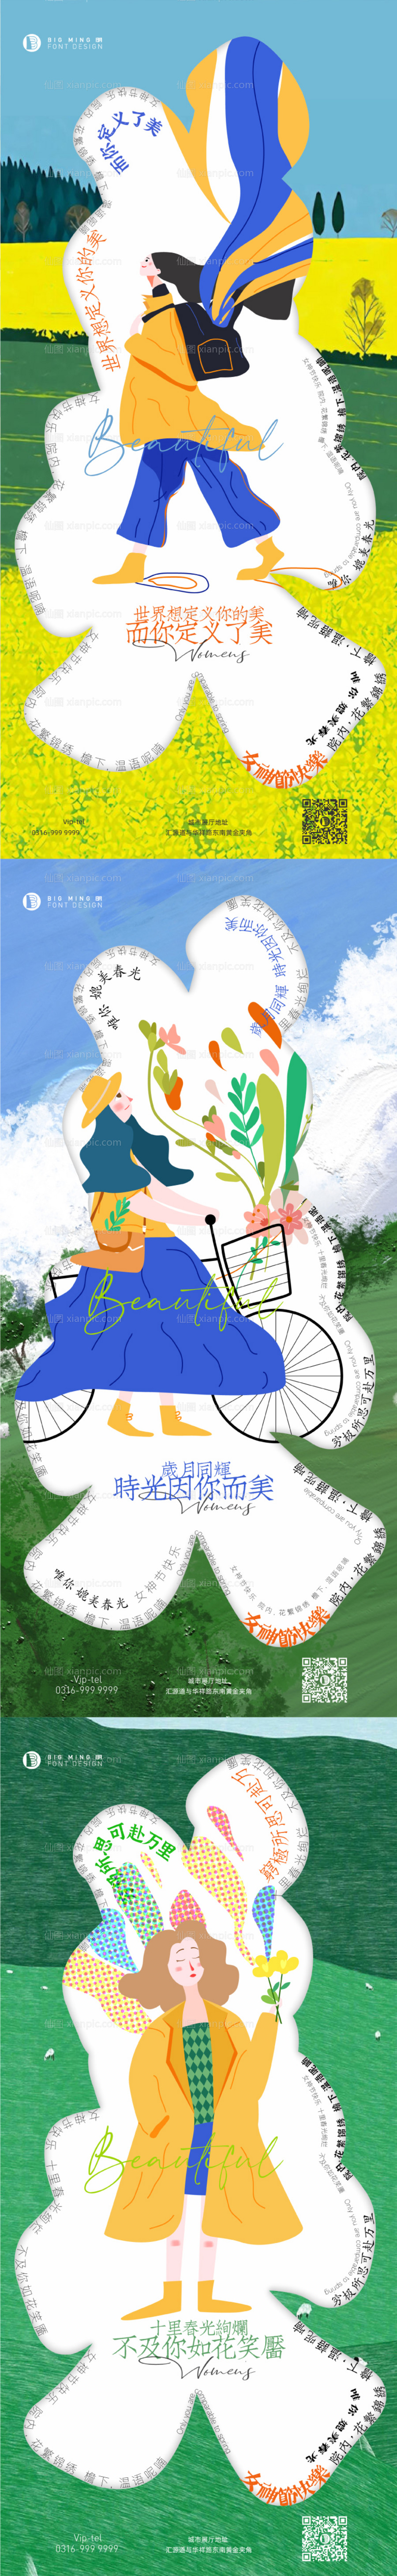 素材乐-38女神节插画创意系列海报